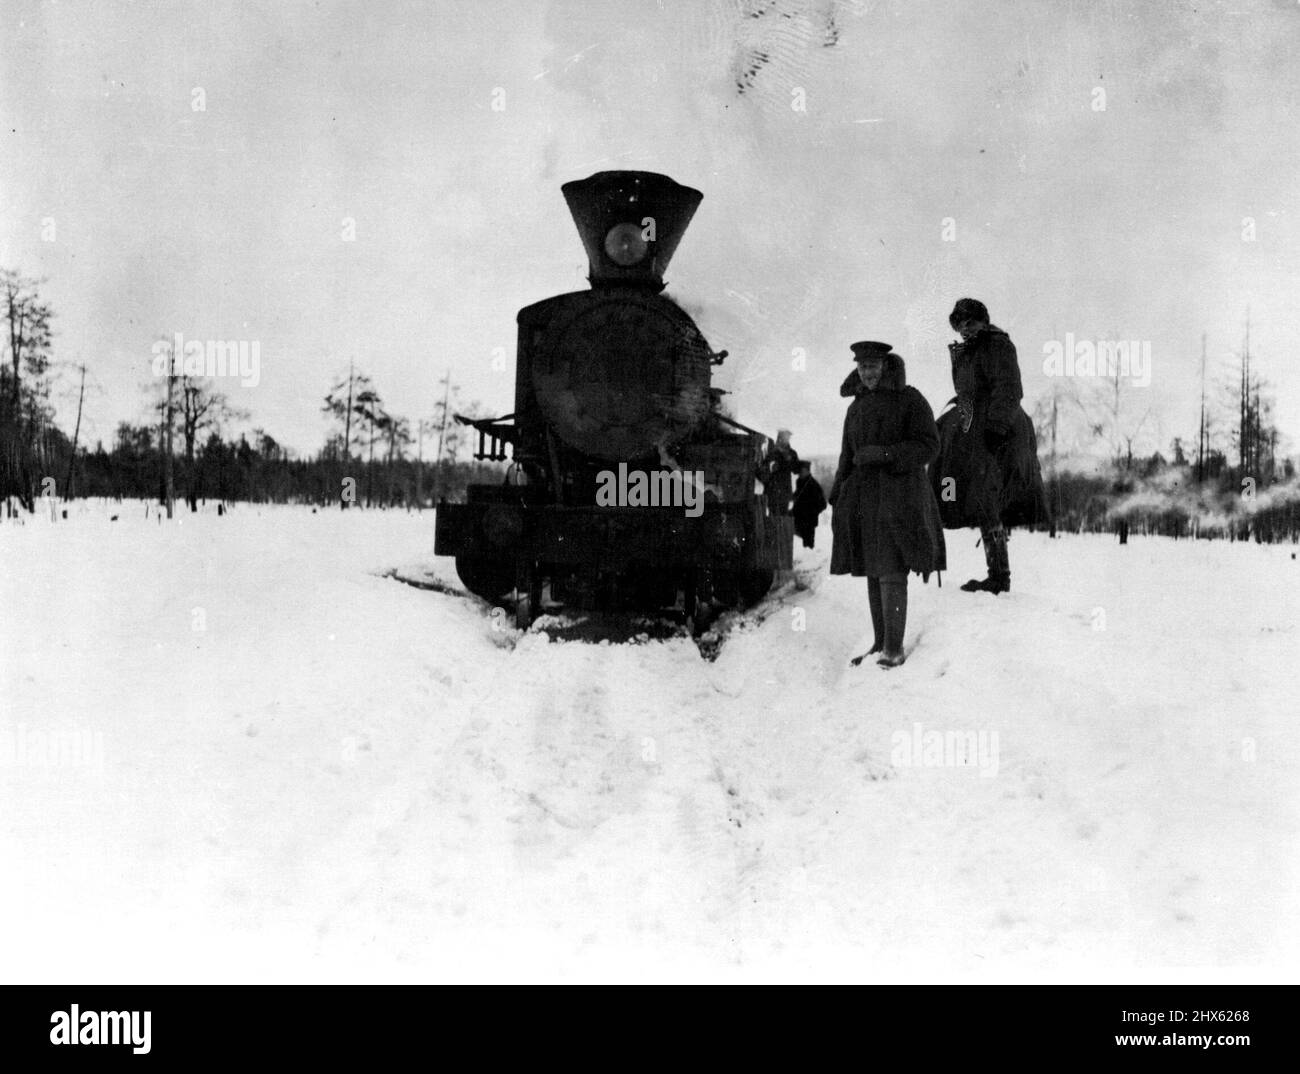 Flüchtlinge im arktischen Russland -- die Flüchtlinge trainieren schneit. Die letzten britischen Flüchtlinge aus Petrograd. Die Bahnfahrt von Petrograd nach Murmansk dauerte acht Tage. Um die russischen Güterwagen zu beschaffen, die notwendig sind, um die Flüchtlinge zu transportieren, mussten große Summen an verschiedene Beamte in petrograd gezahlt werden. Für die ersten 300 Wersten (250 Meilen) kostete es jeden Mann 150 Rubel (£15). 11. Juni 1918. (Foto von Daily Mirror).;Flüchtlinge im arktischen Russland -- die Flüchtlinge trainieren geschneit. Der letzte britische Flüchtling Stockfoto